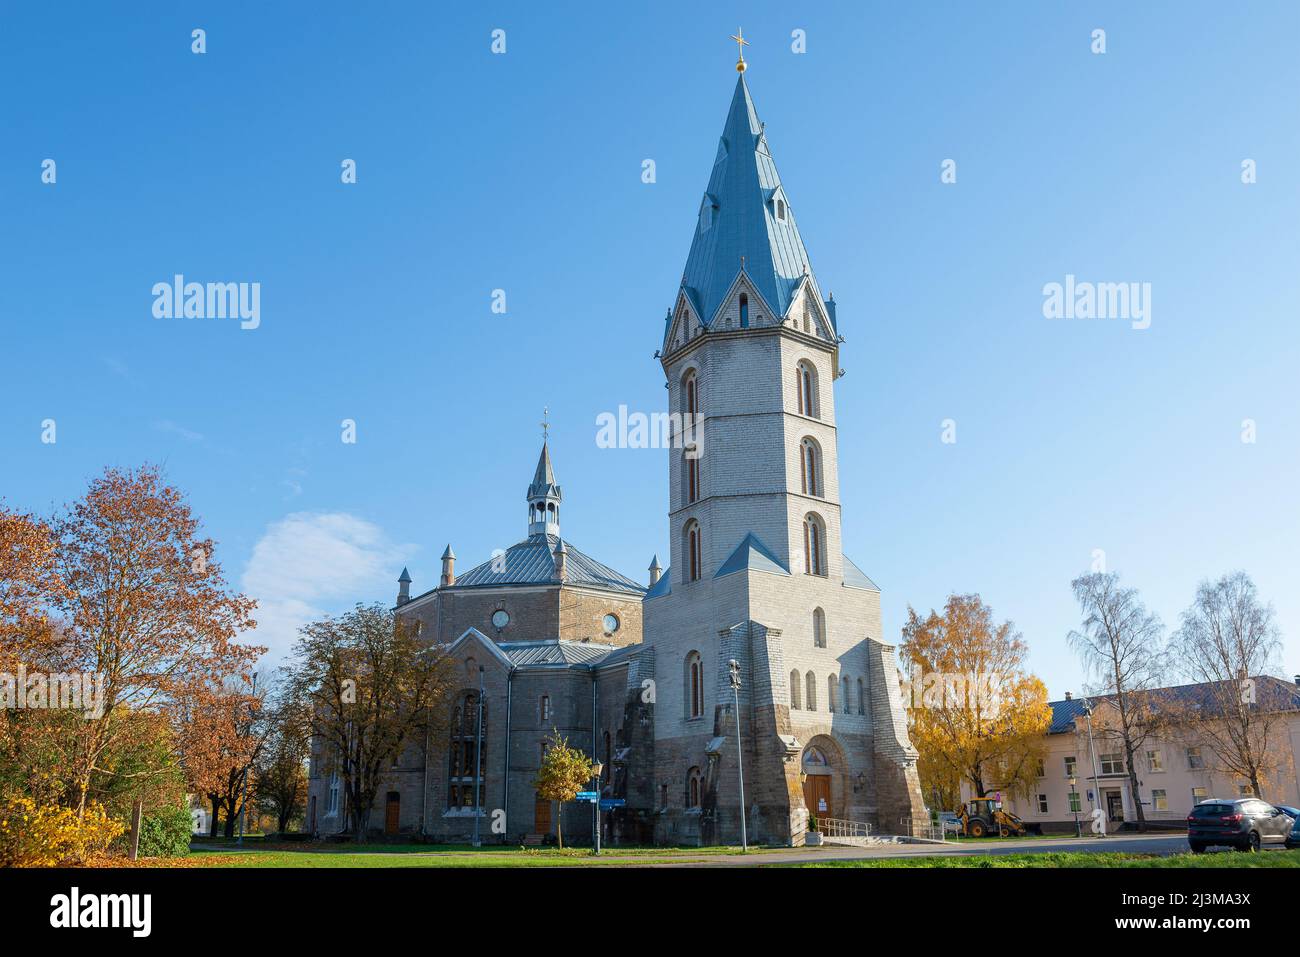 Église en l'honneur de l'empereur russe Alexandre II le jour ensoleillé d'octobre. Narva, Estonie Banque D'Images